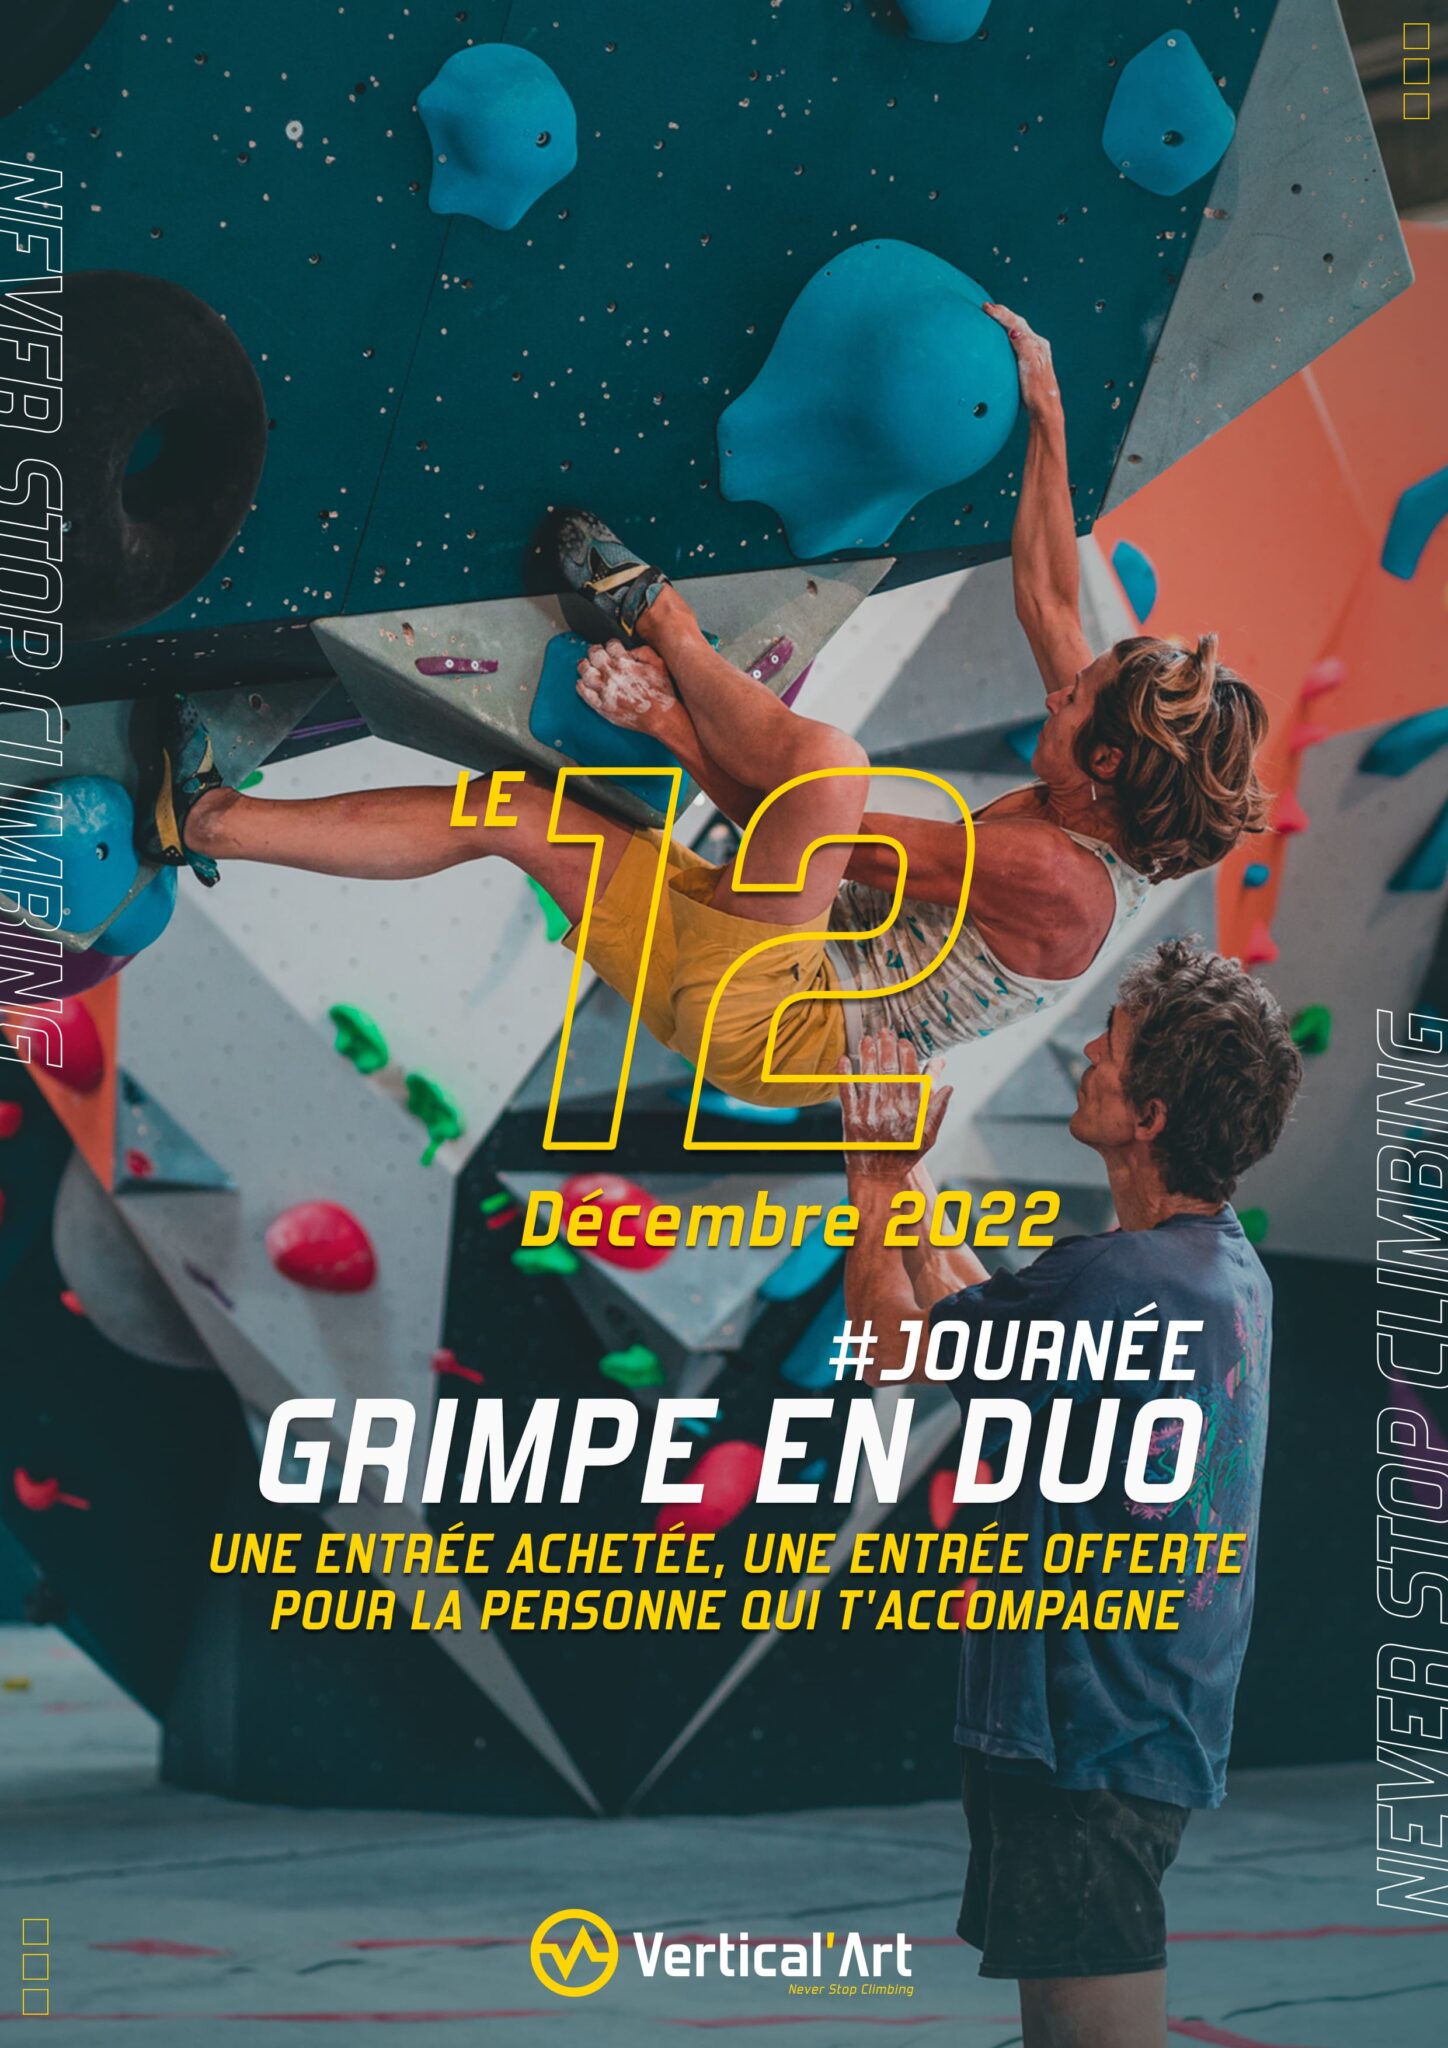 Grimpe en duo Vertical'Art Rungis 12 décembre 2022 une entrée achetée, une offerte